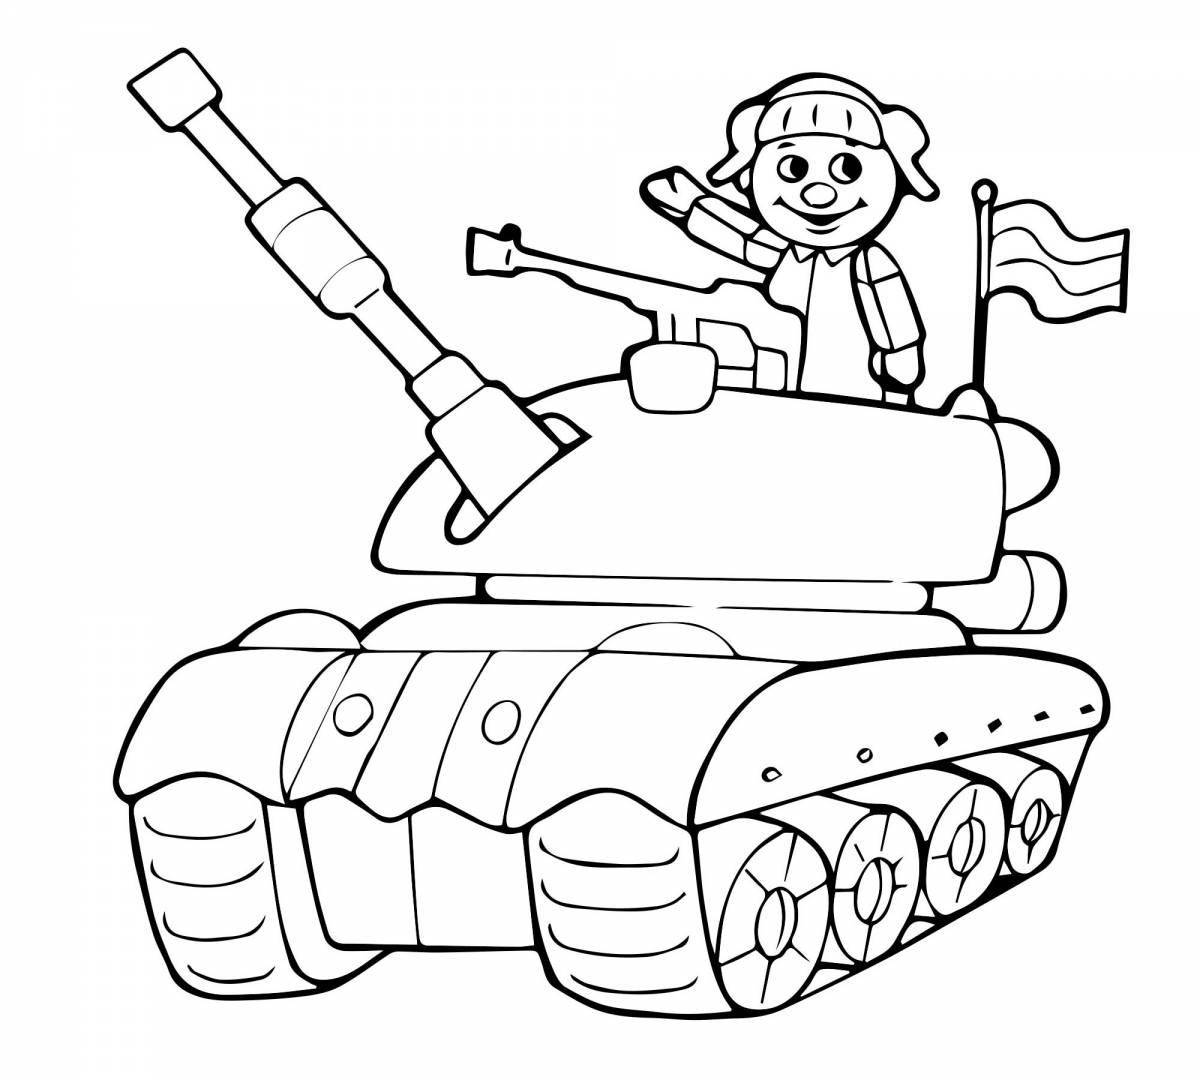 Юмористическая военная раскраска для детей 6-7 лет